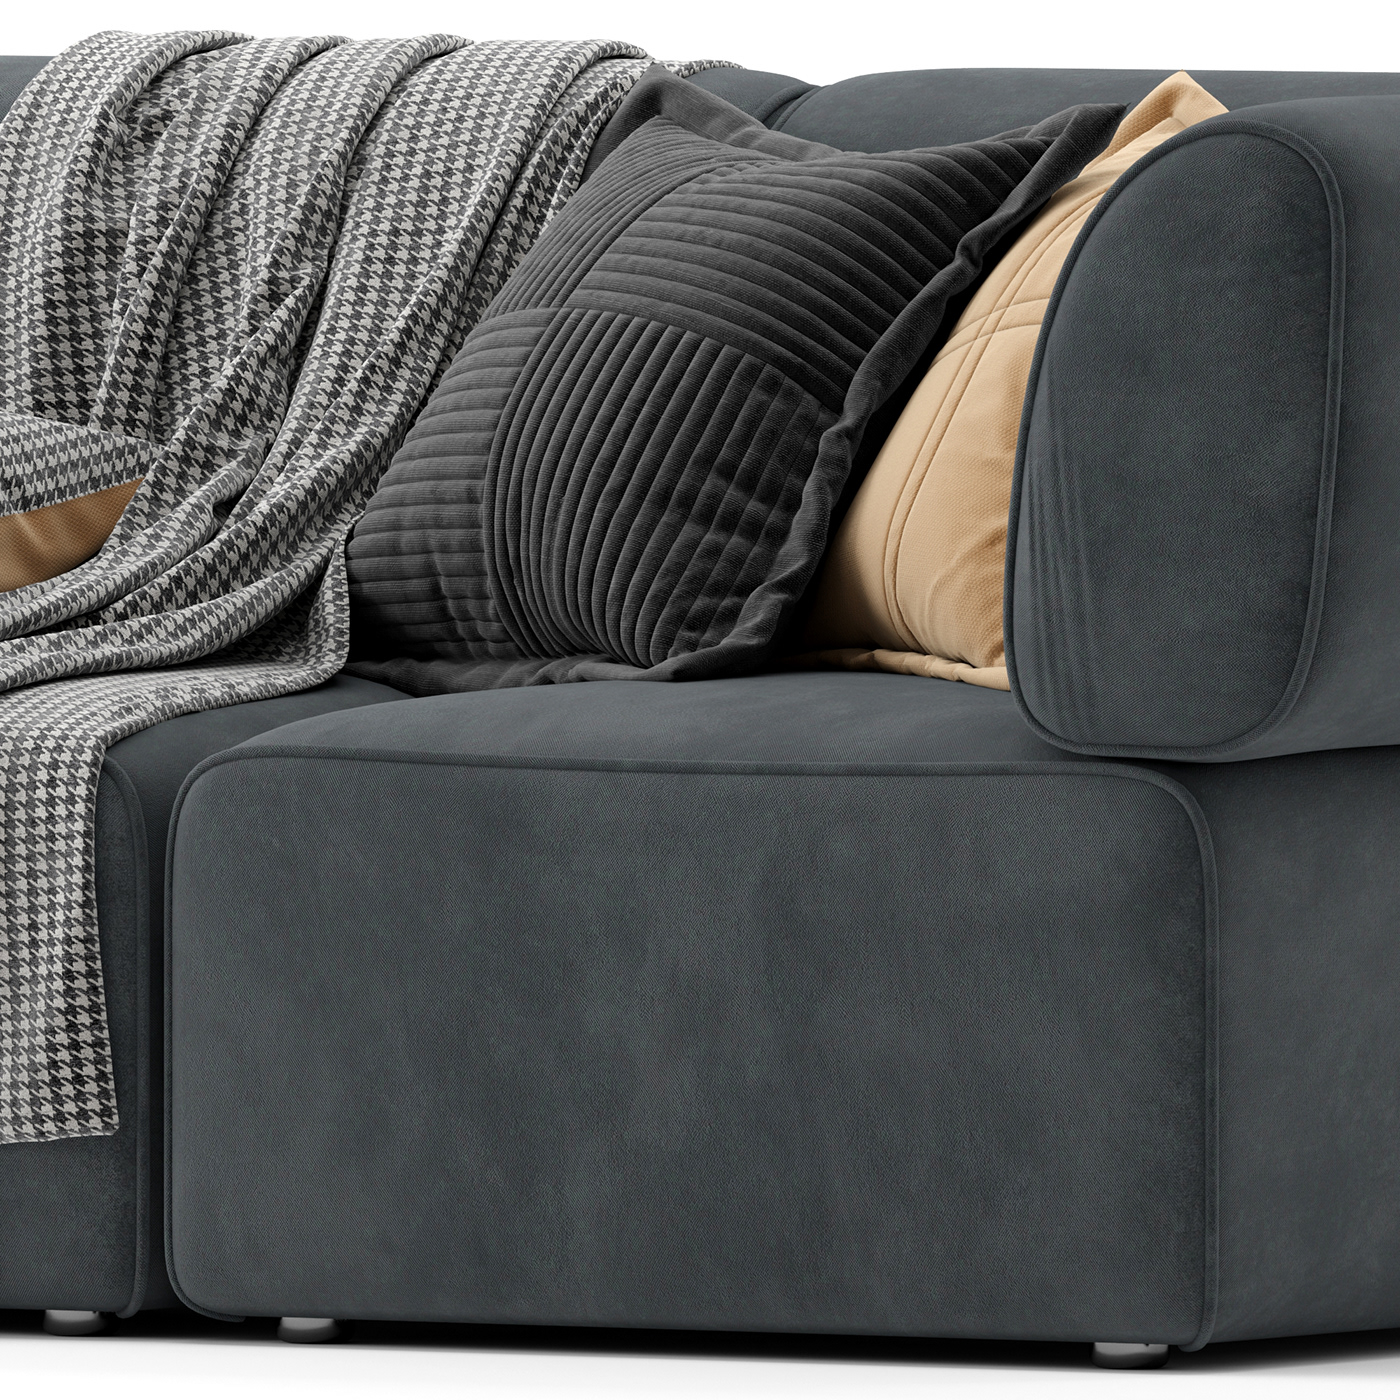 sofa Joybird Interior livingroom 3dmodeling 3dsmax visualization pillow blanket